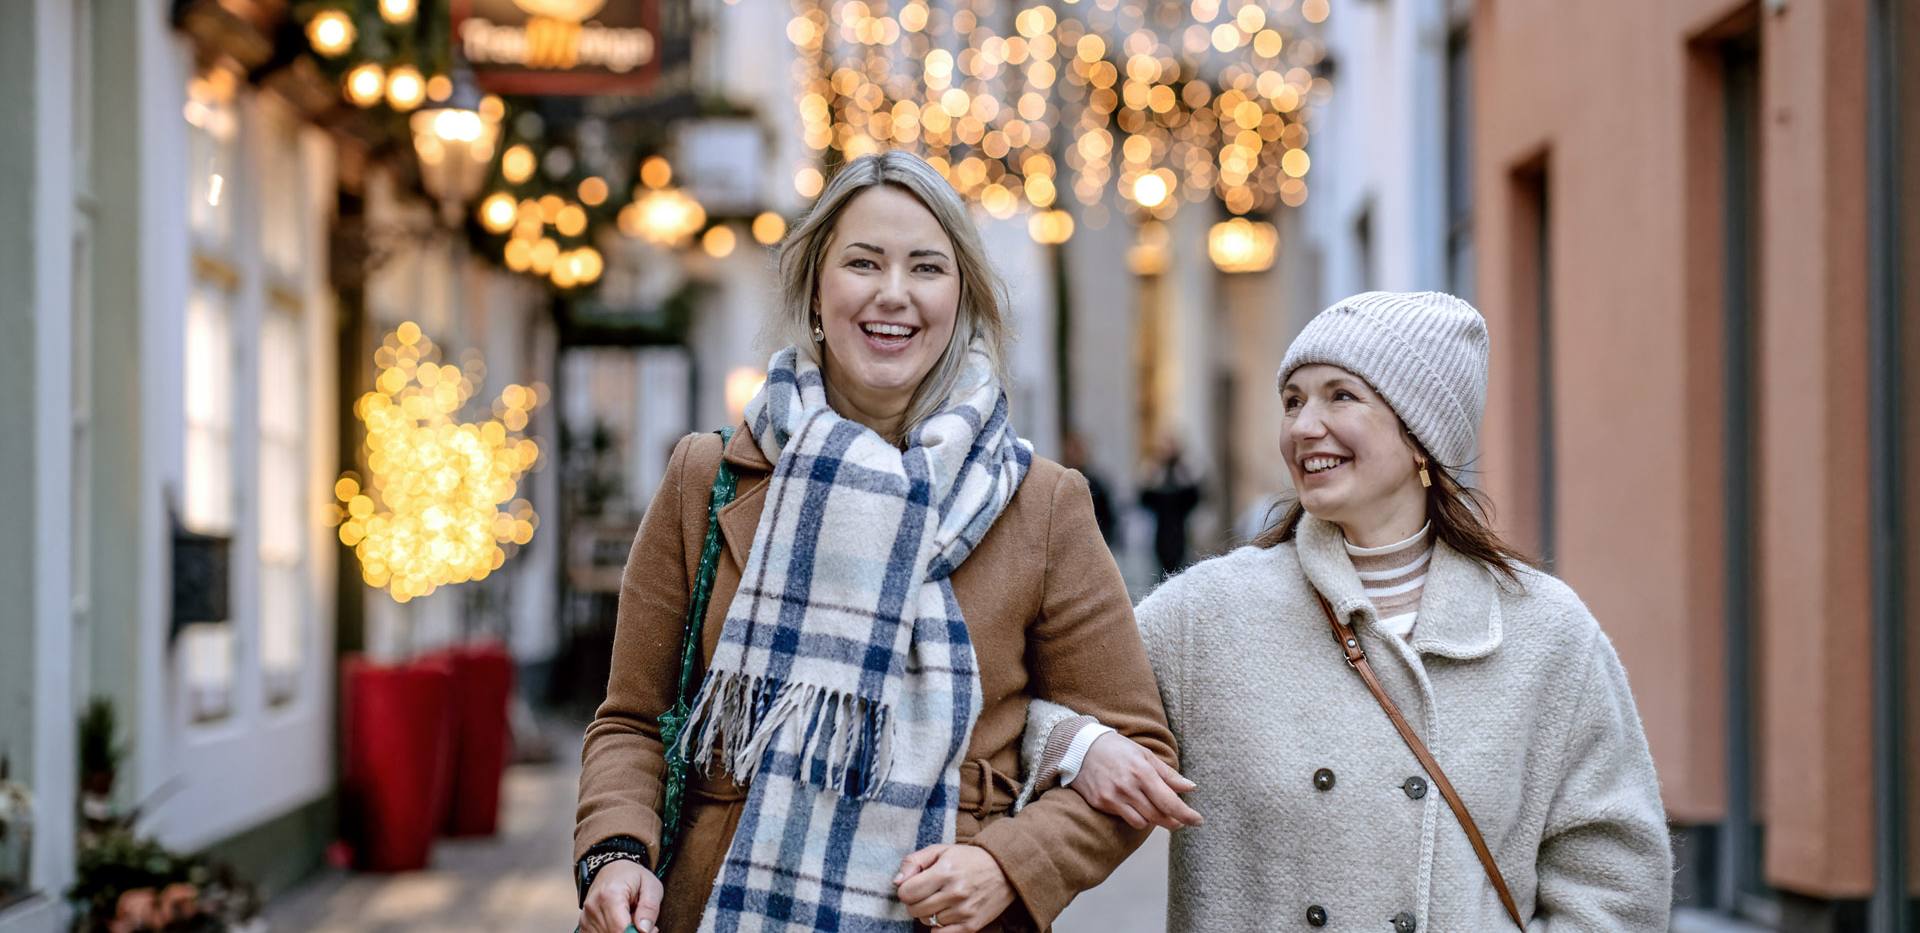 Bild von zwei lächelnden Frauen beim Weihnachtsshopping in der festlich beleuchteten Bergstraße in Oldenburg.